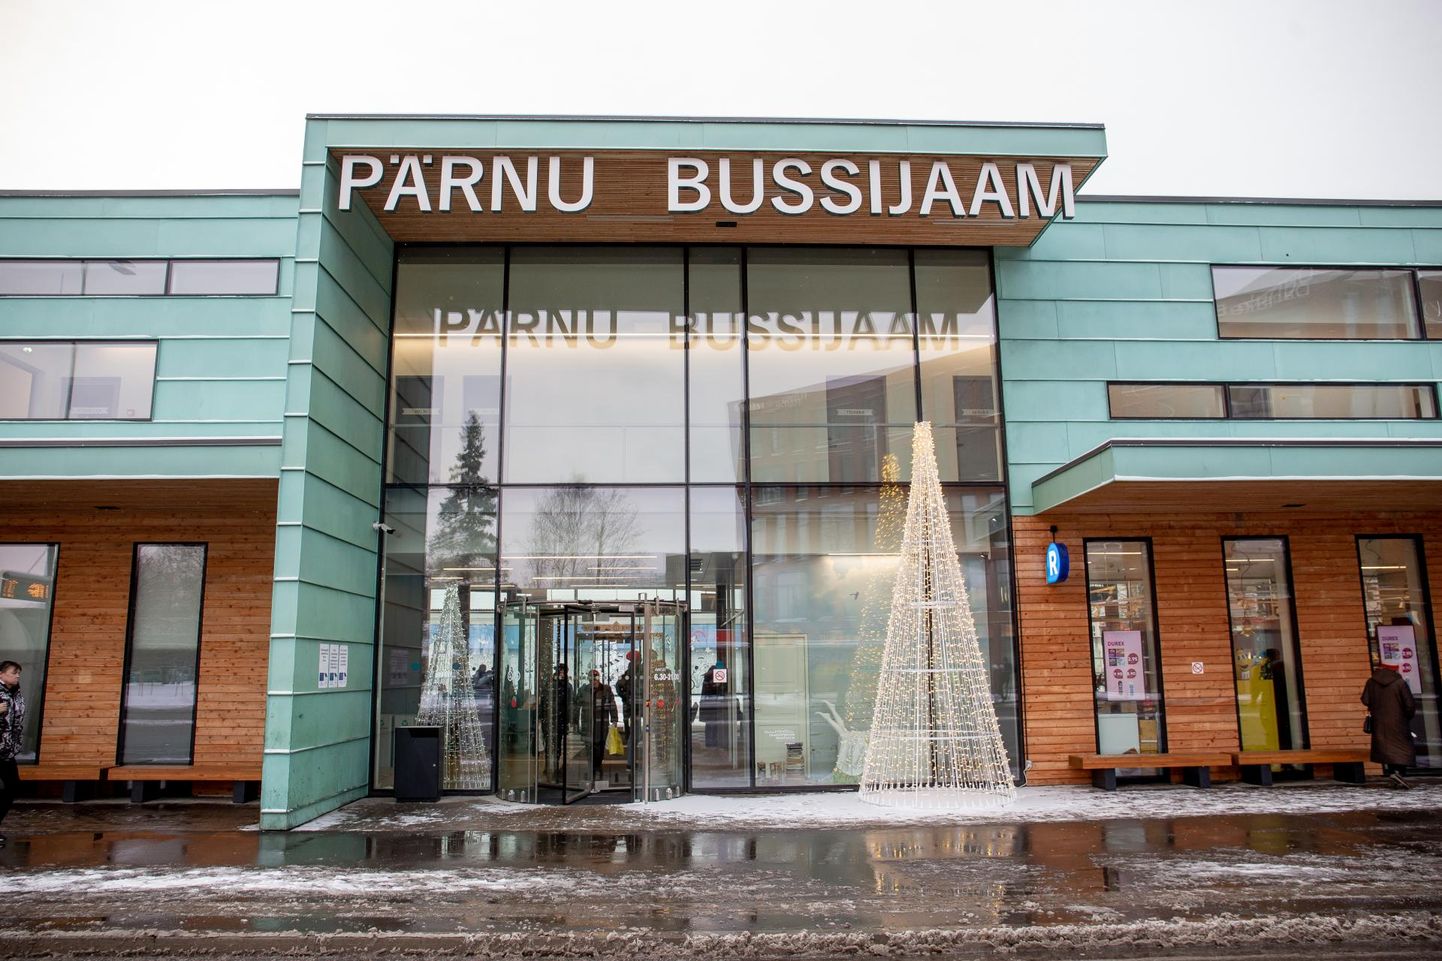 Ühistranspordi korraldus elas Pärnumaal üle suuri muutusi ja Pärnusse ehitati uus bussijaam.